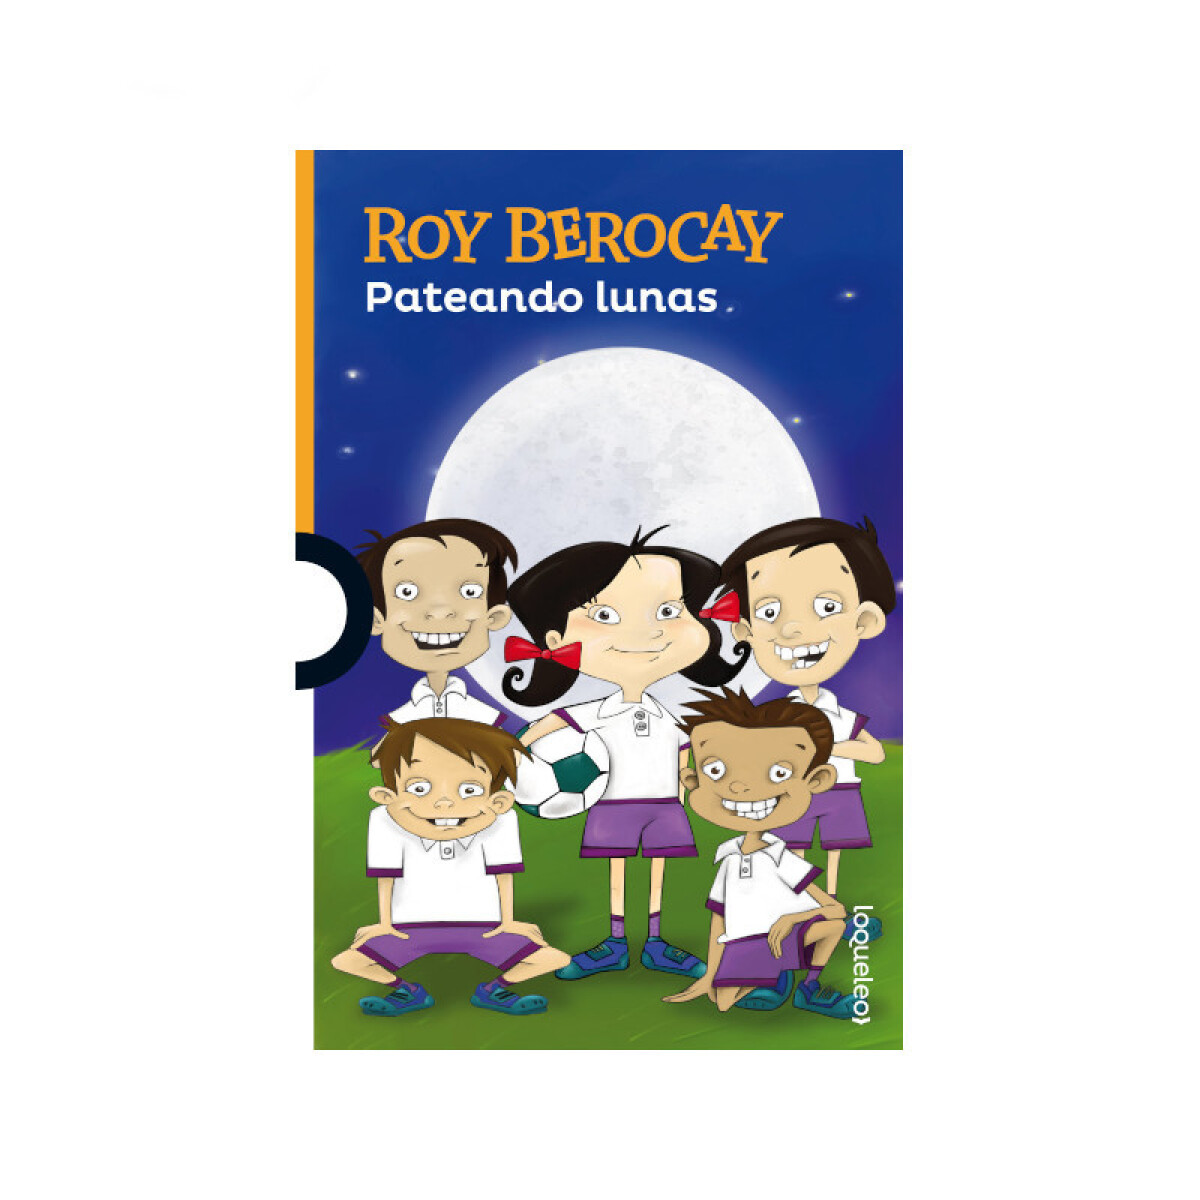 Pateando lunas - Roy Berocay 